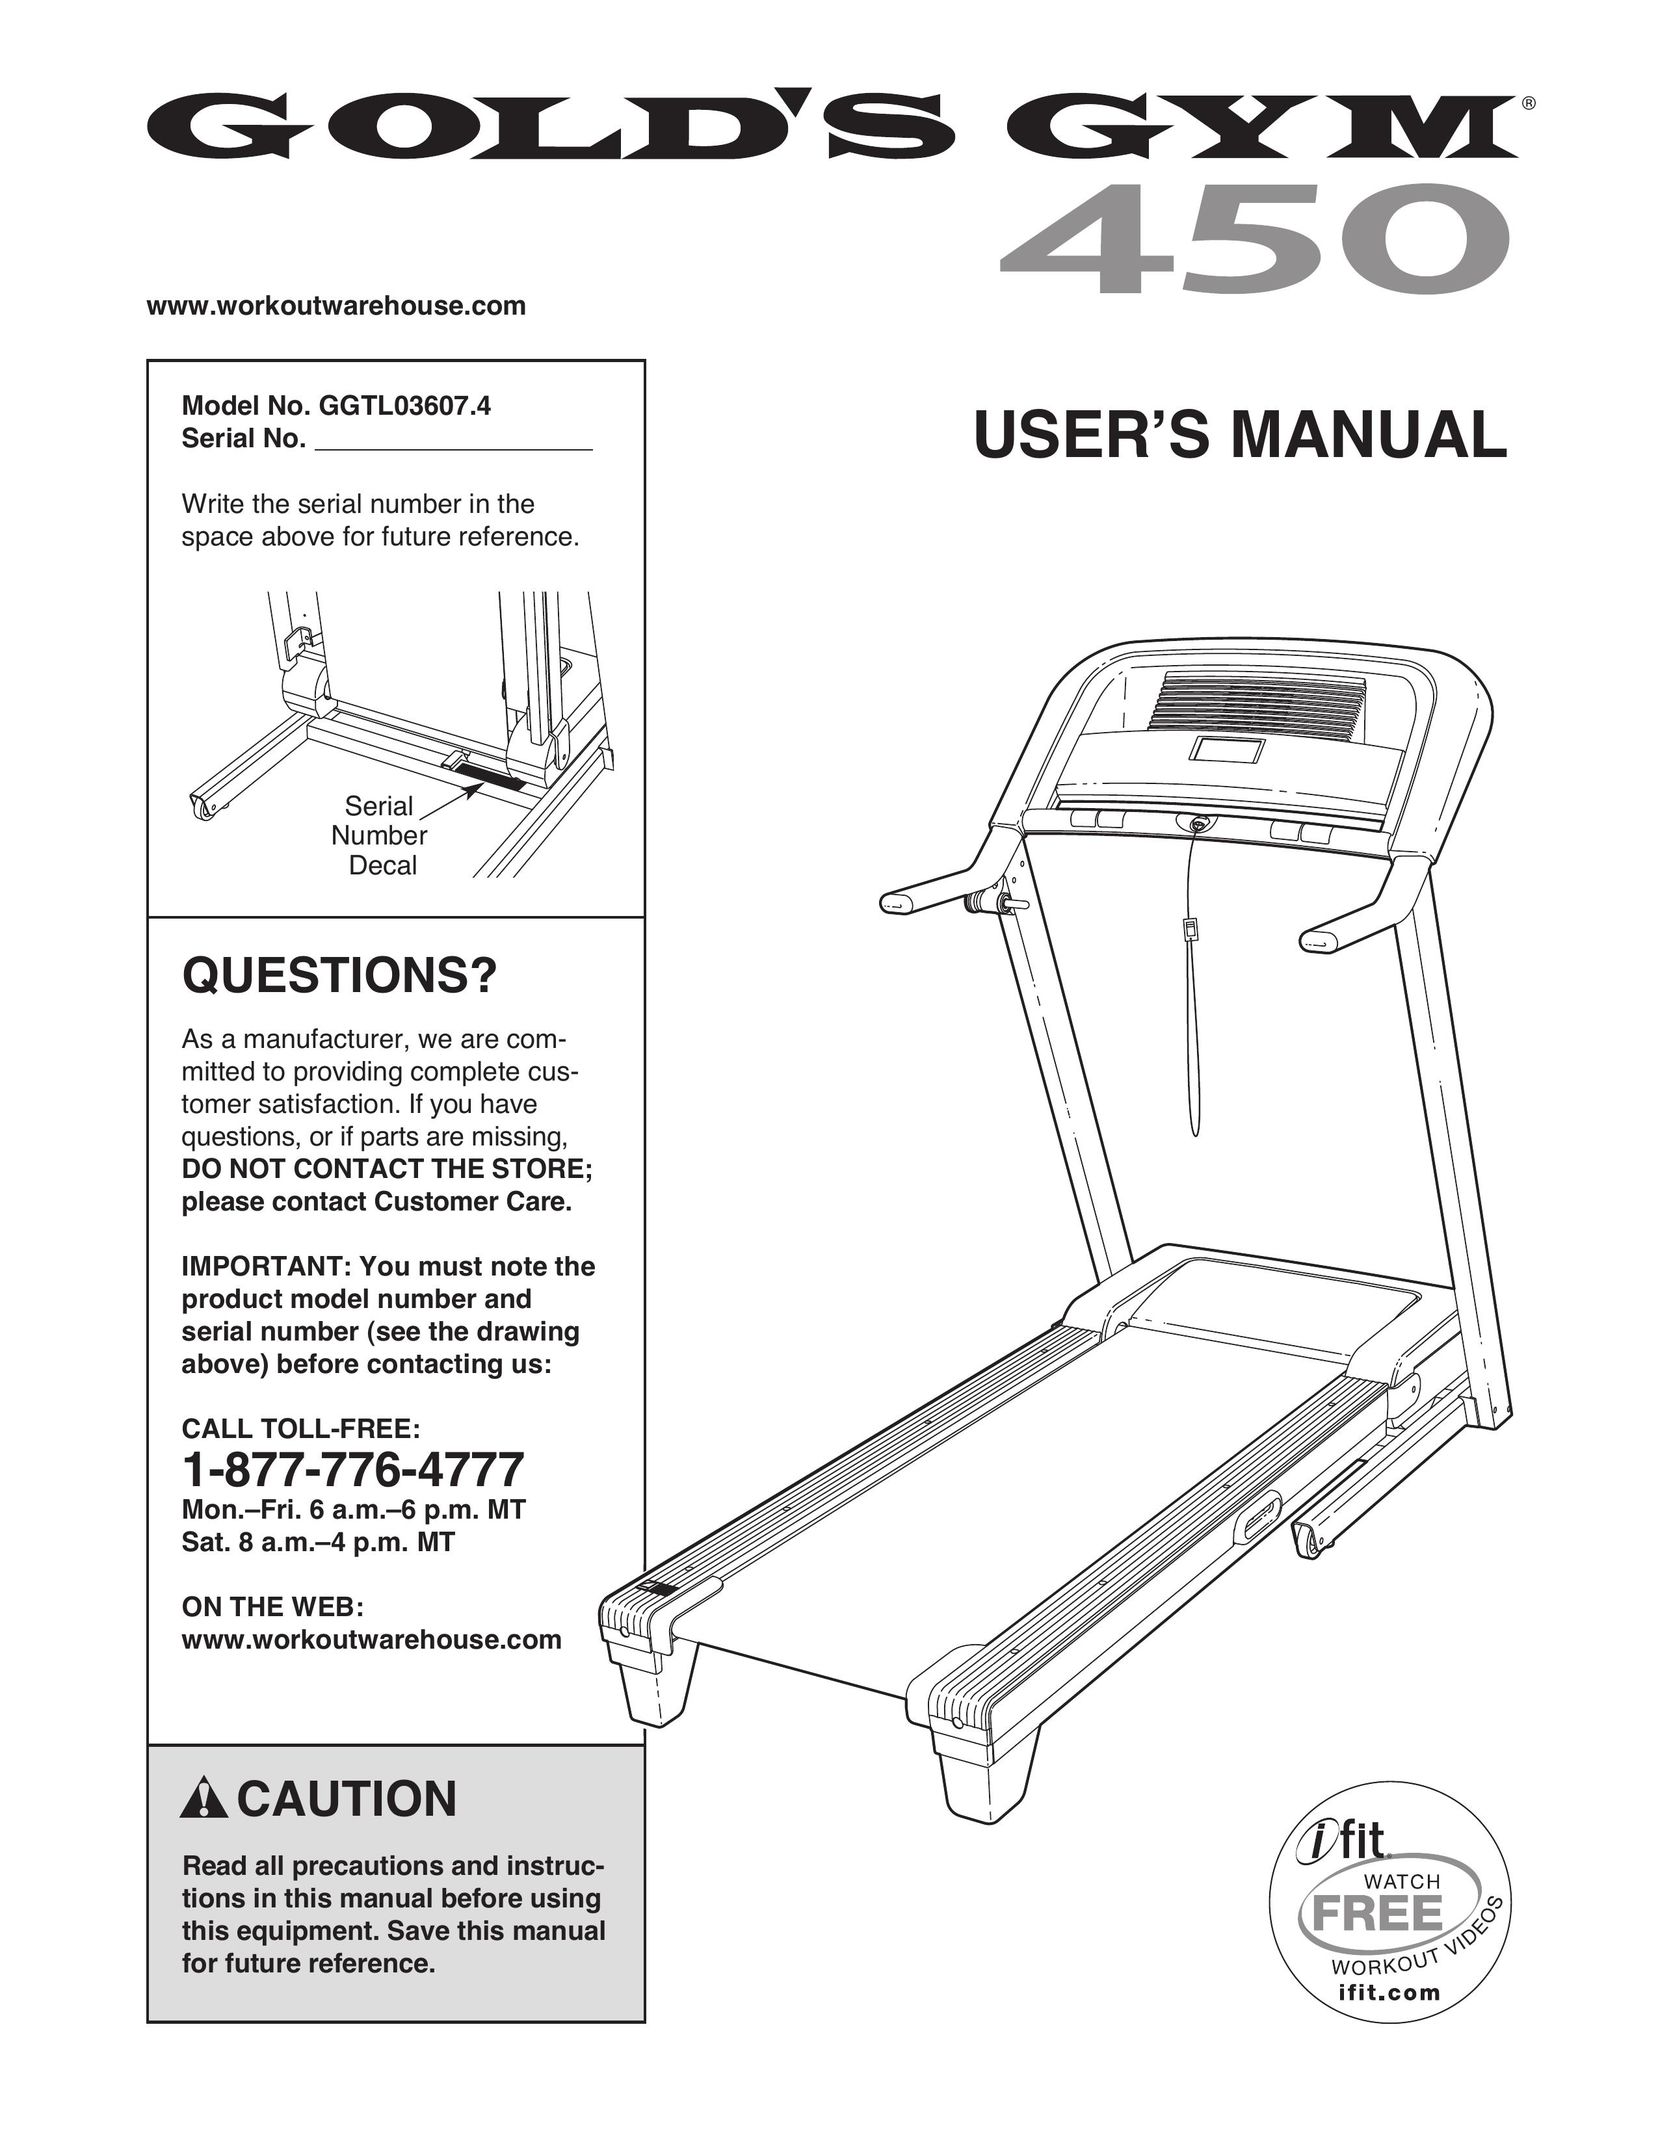 Gold's Gym GGTL03607.4 Treadmill User Manual